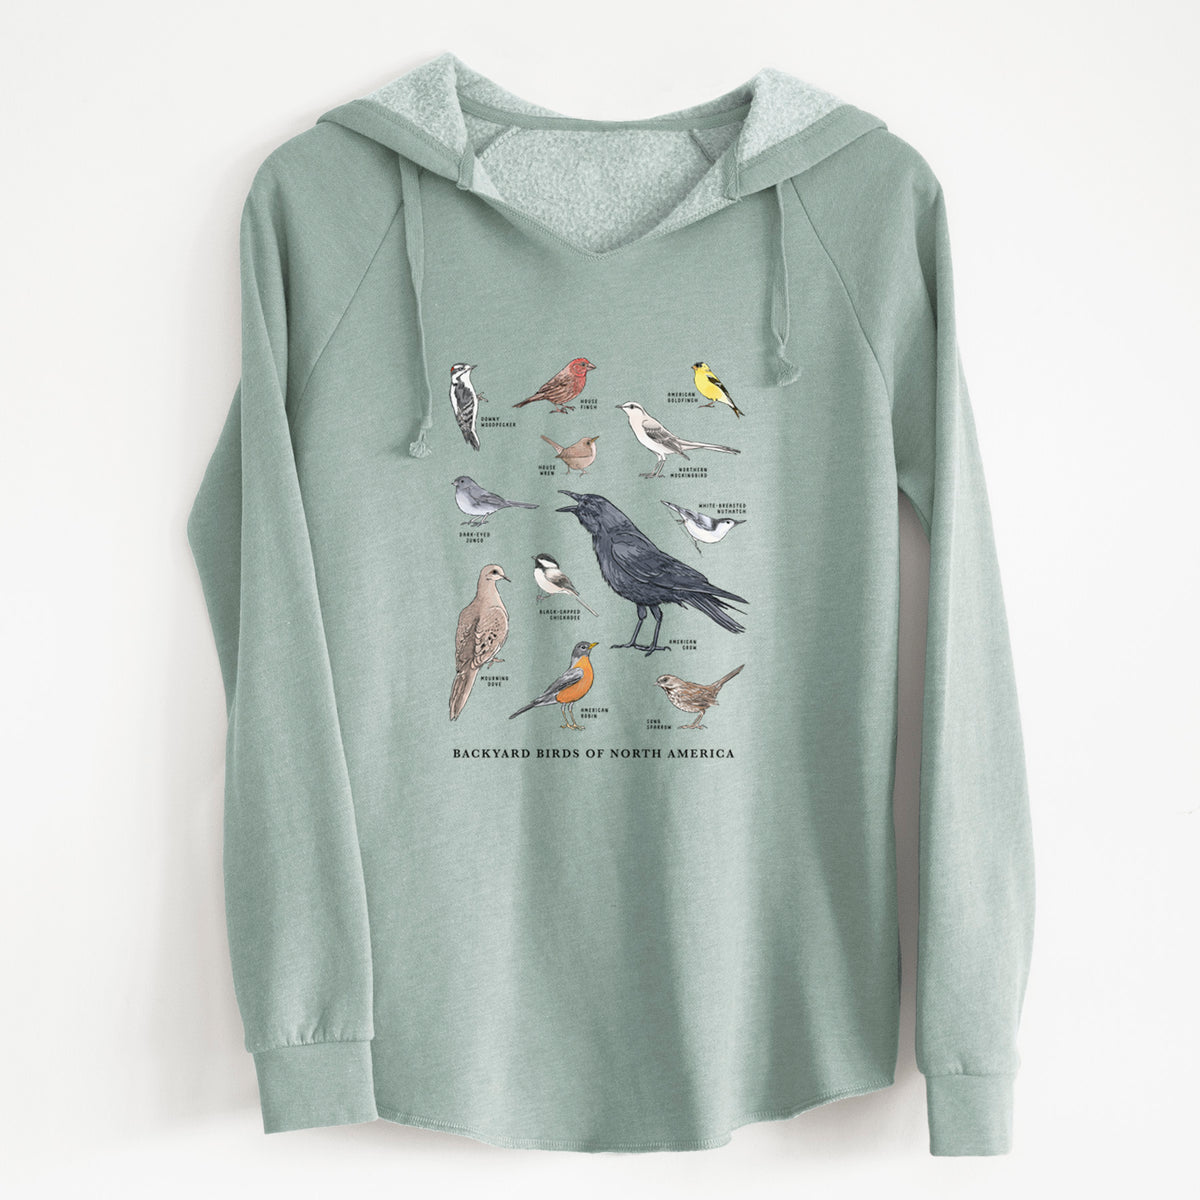 Common Backyard Birds of North America - Cali Wave Hooded Sweatshirt